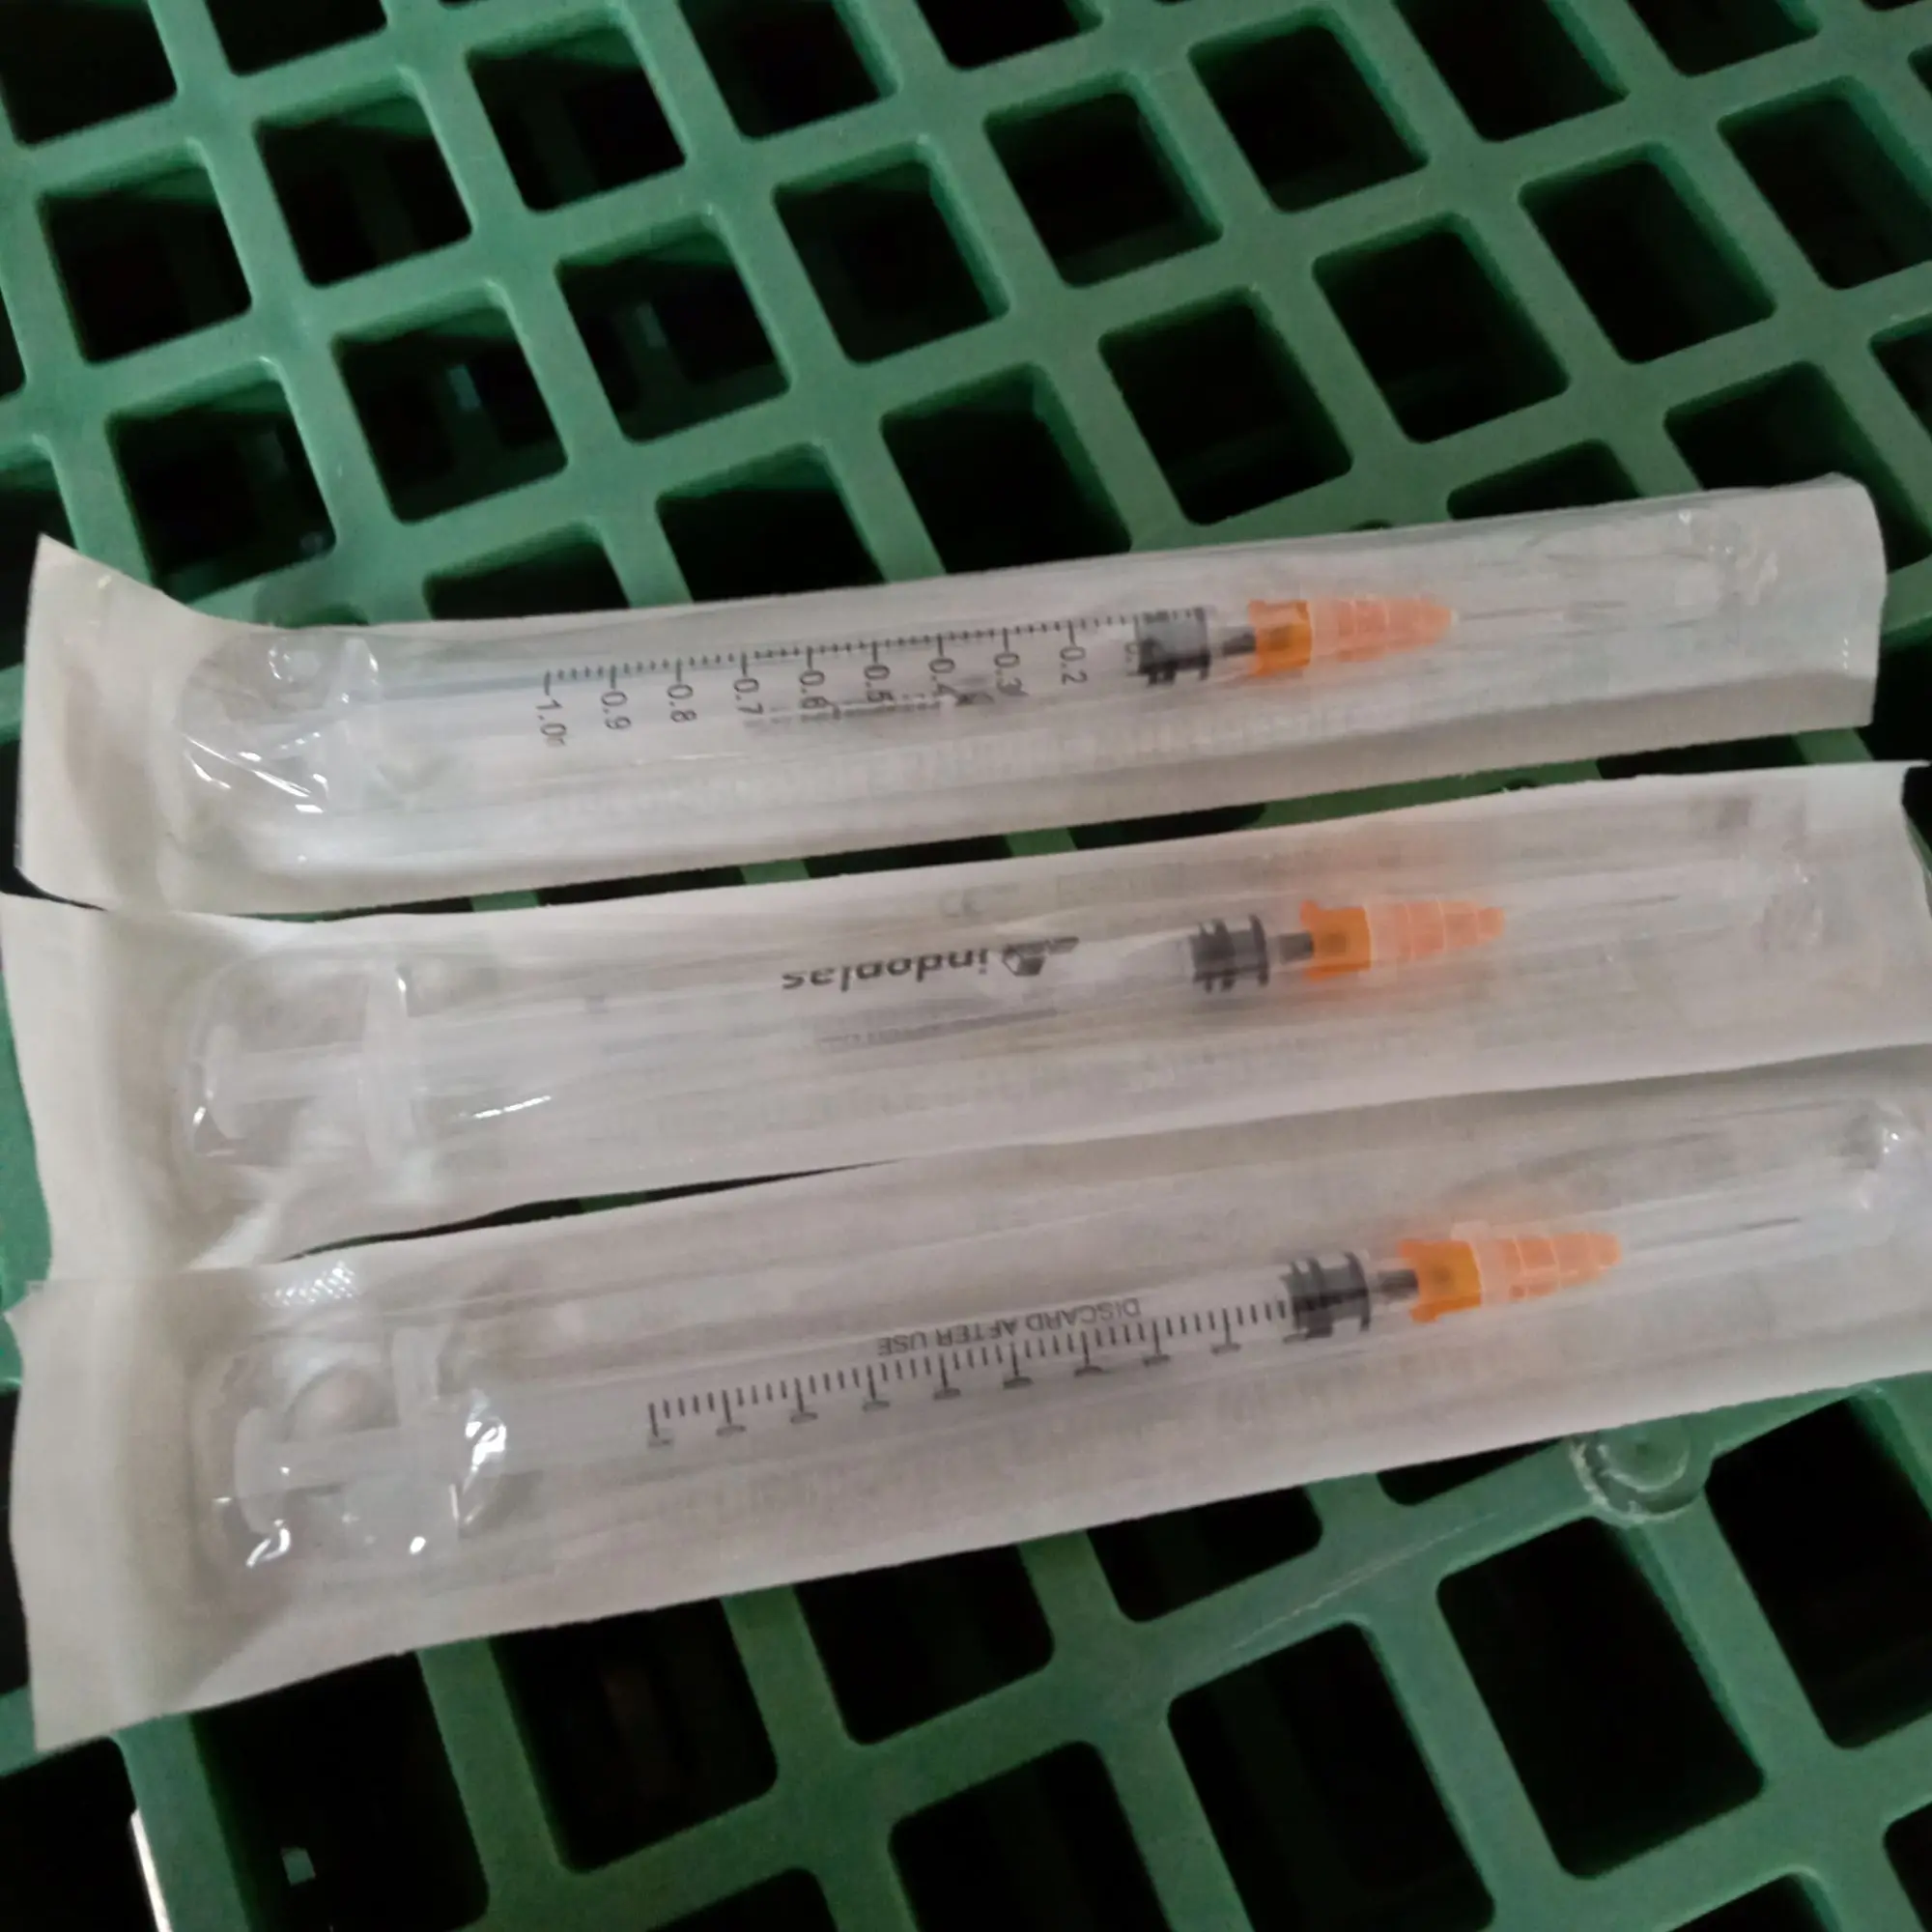 1ML Disposable Syringe with Needle - 3PCS